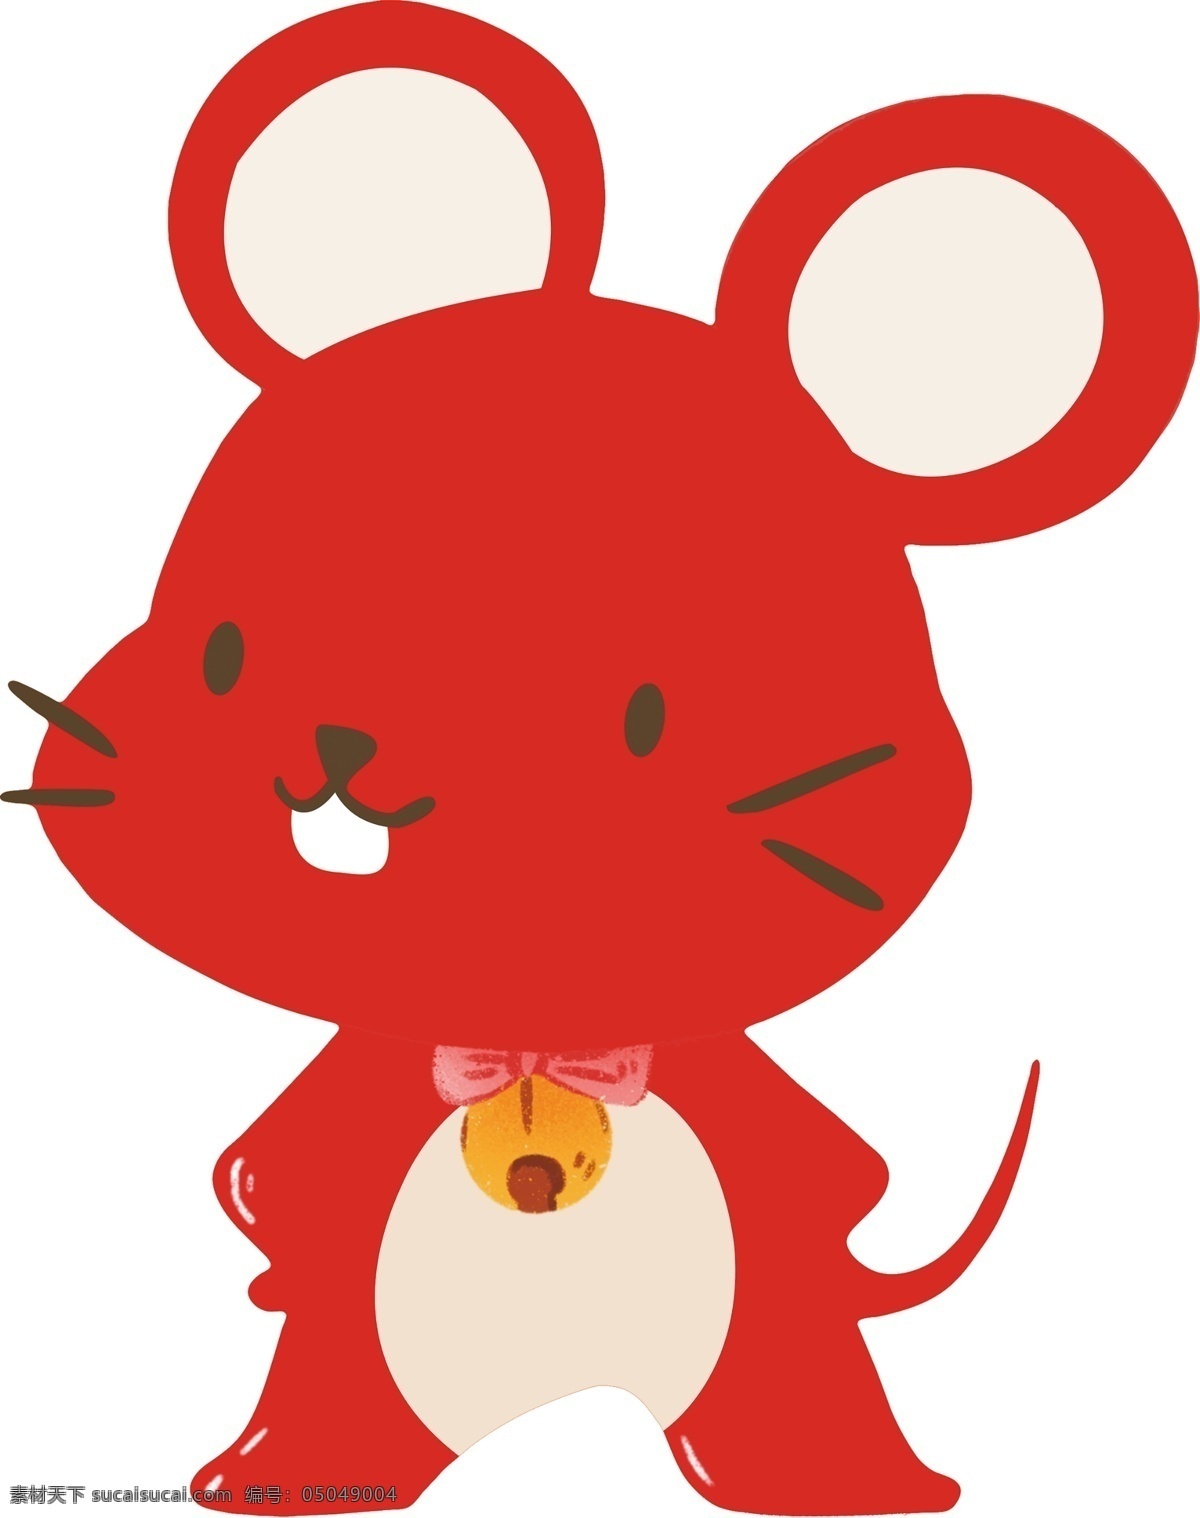 卡通老鼠 手绘老鼠 矢量老鼠 老鼠吉祥物 老鼠卡通造型 鼠年设计素材 可爱老鼠 2020老鼠 鼠年 冬天老鼠 奶酪老鼠 卡通鼠 鼠年素材 2020 年 矢量图 老鼠